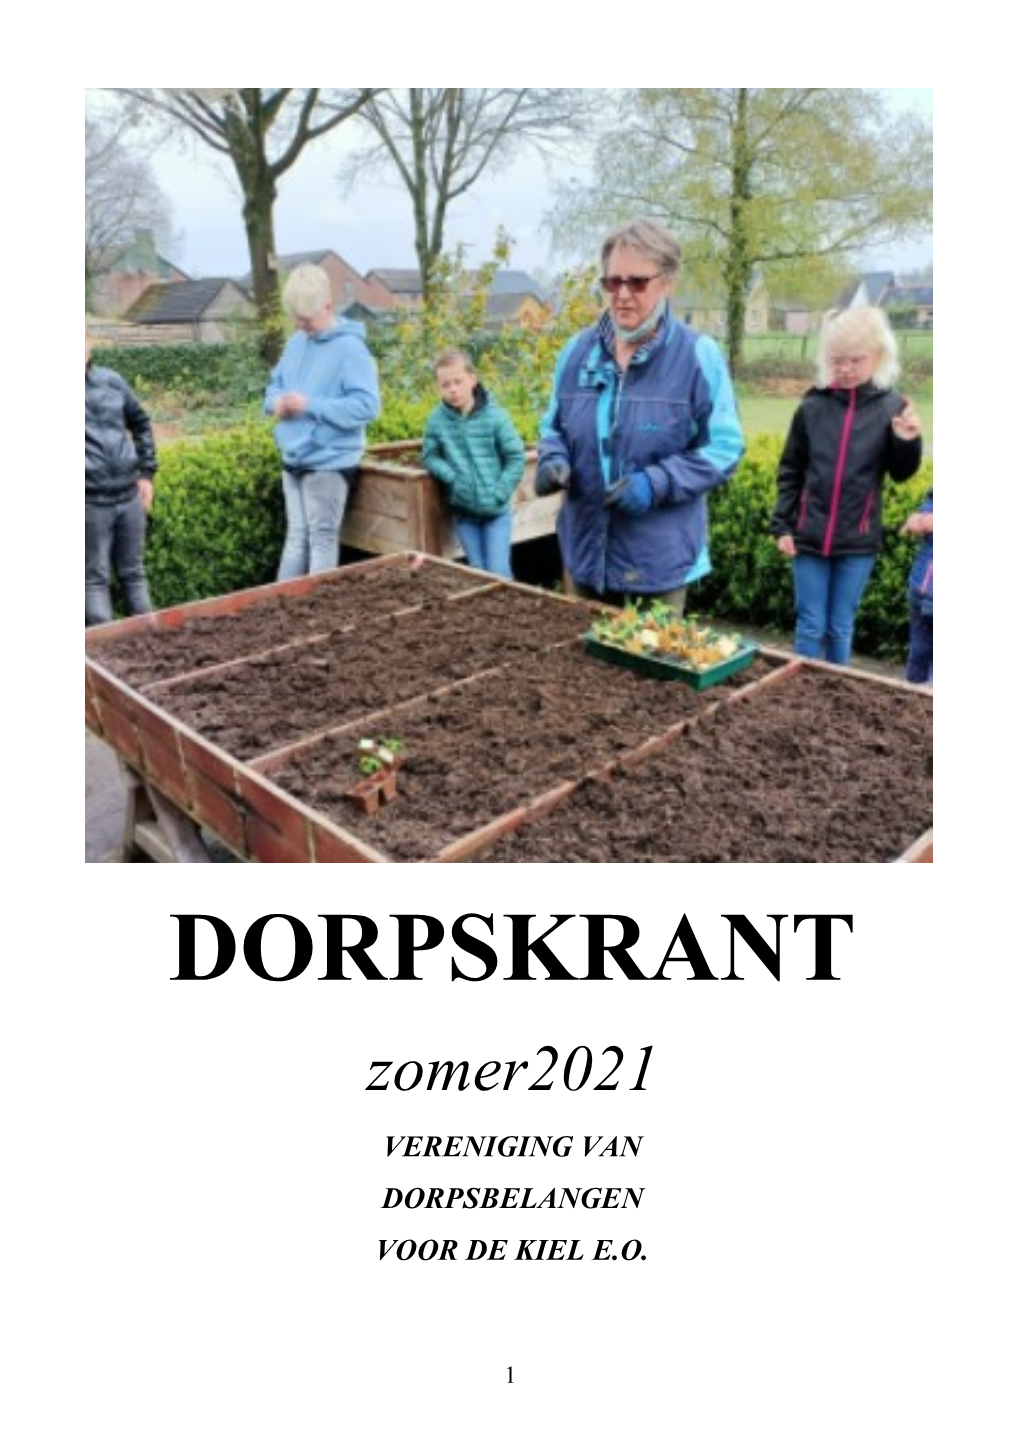 DORPSKRANT Zomer2021 VERENIGING VAN DORPSBELANGEN VOOR DE KIEL E.O